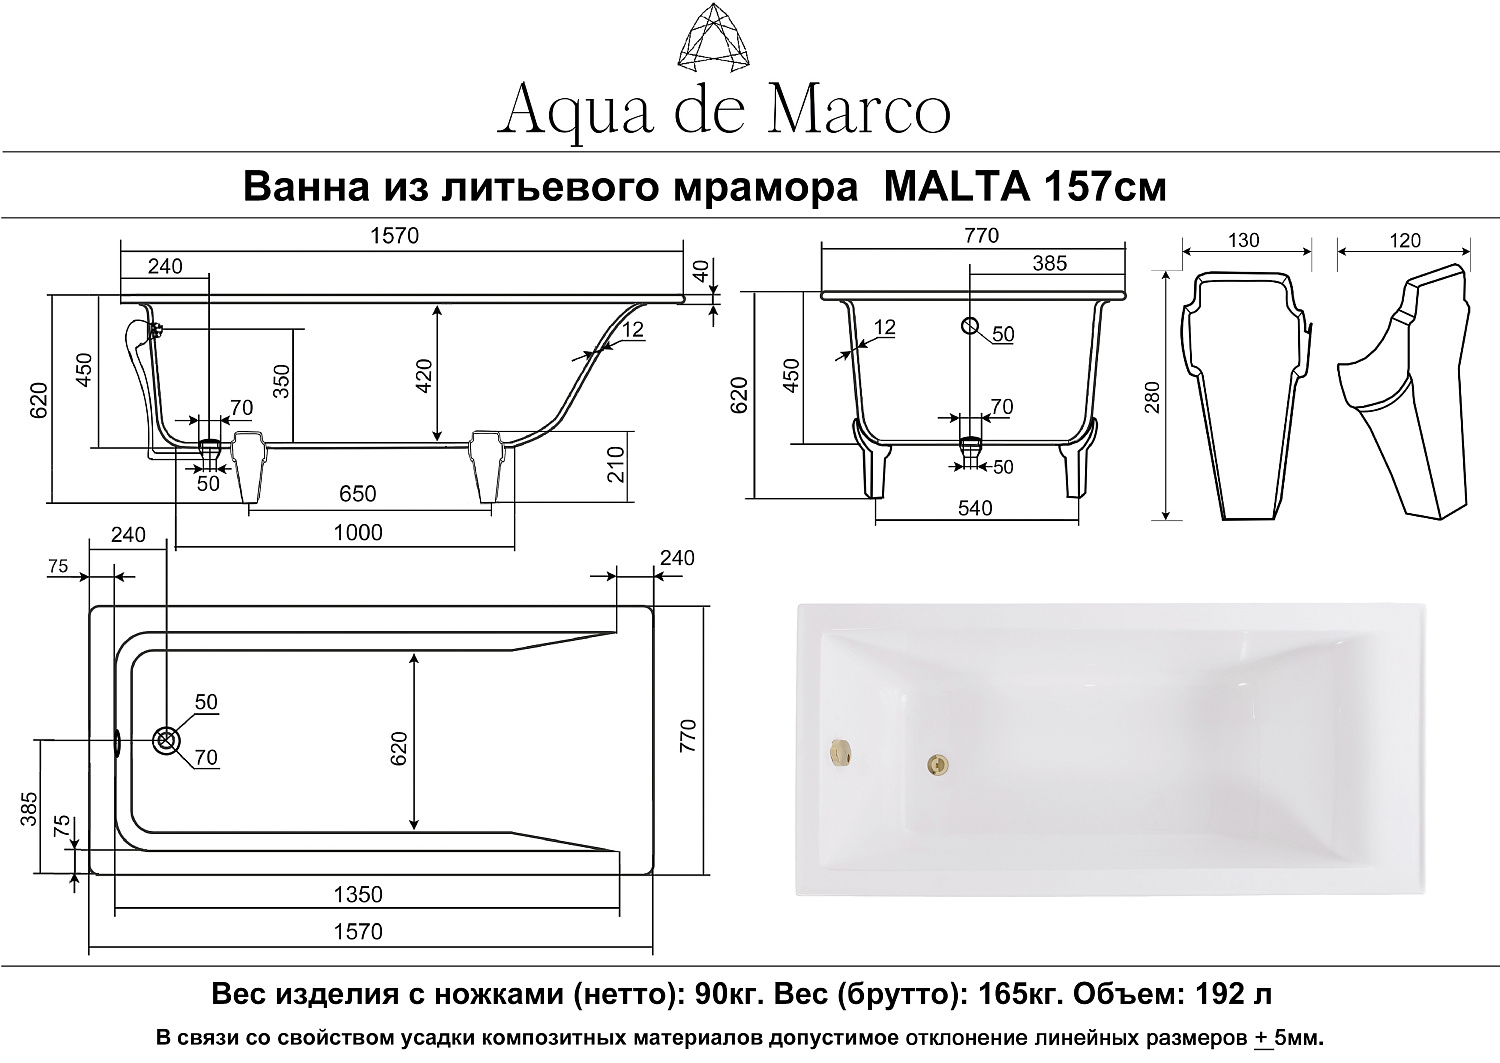 Ванна AQUA DE MARCO Malta /Каменная/белая/каменные ножки (157см*77см*62см) (1160WMAL)